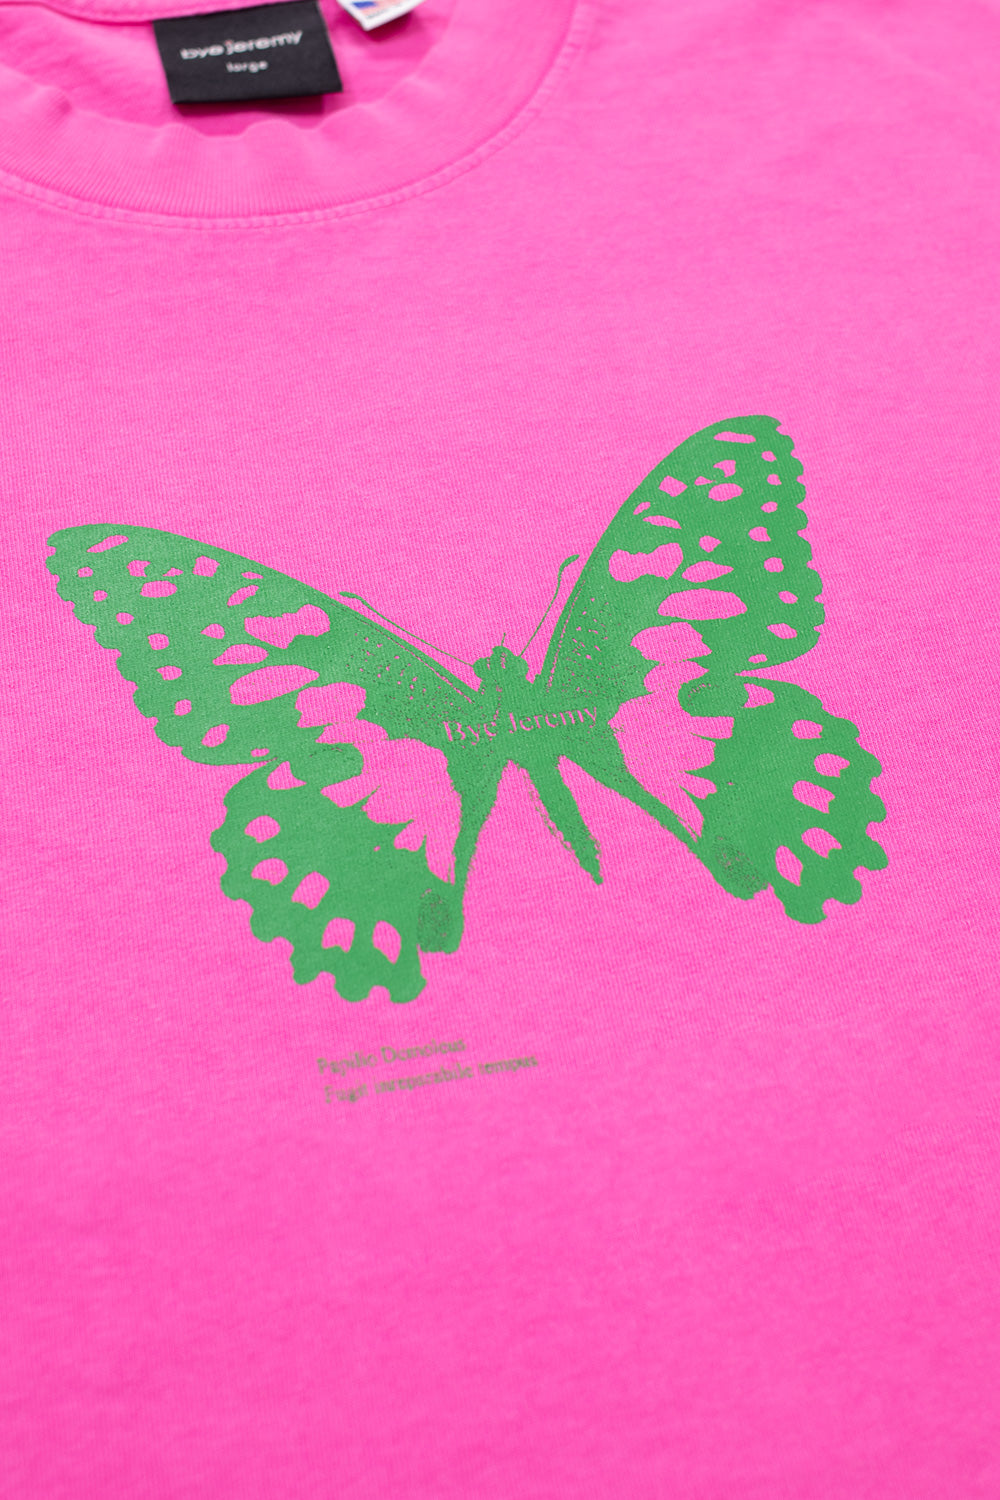 Bye Jeremy Butterfly T-Shirt Pink - BONKERS